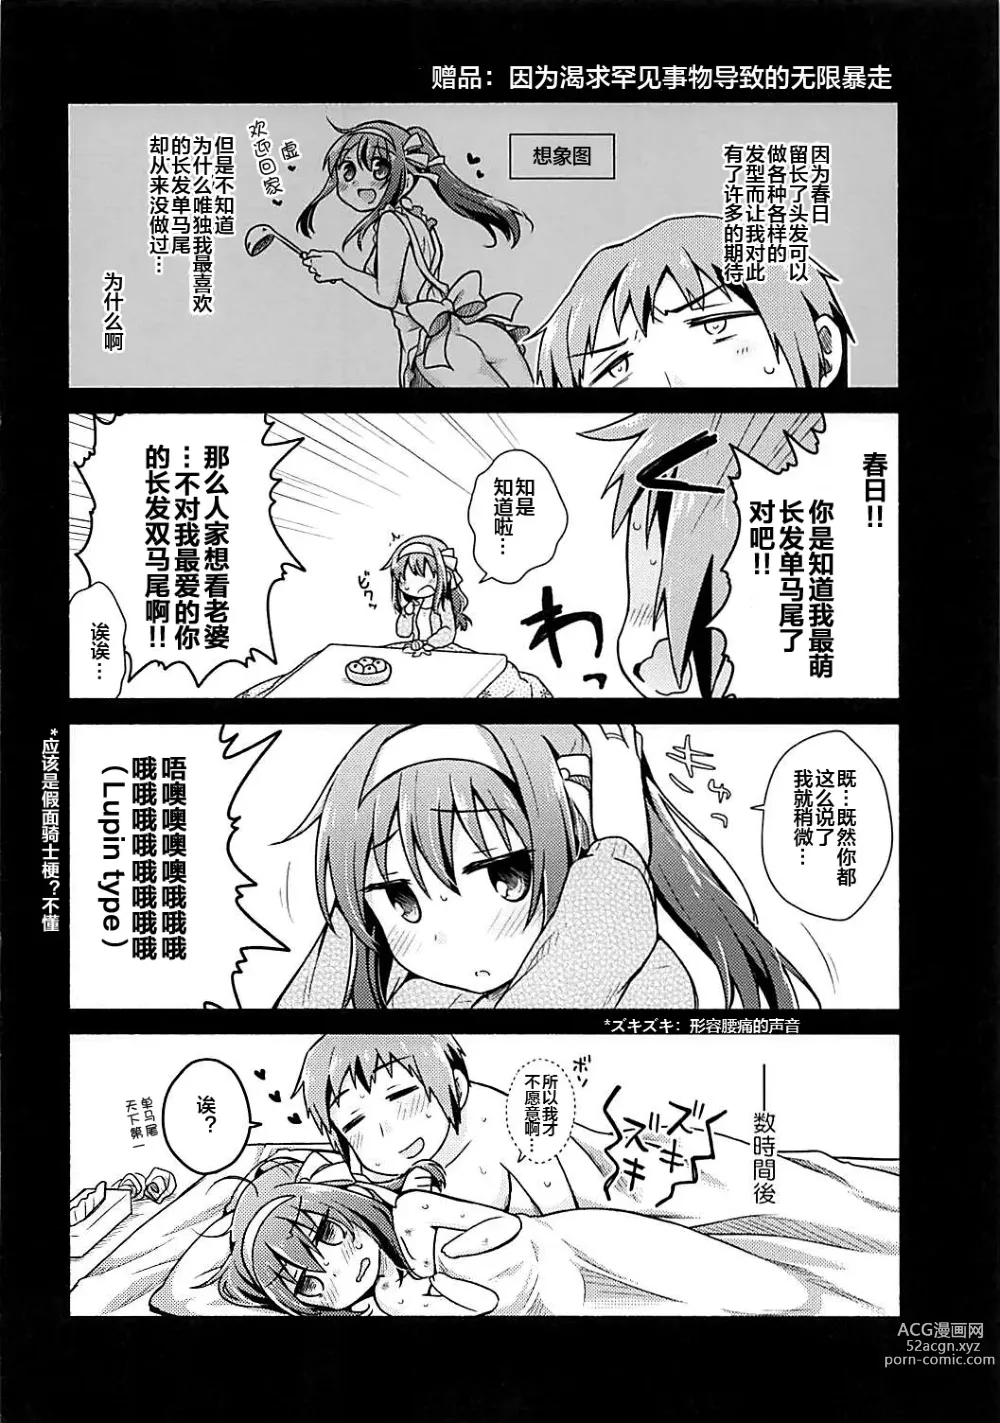 Page 21 of doujinshi Kotatsu de Mikan, yori mo Amaimono.